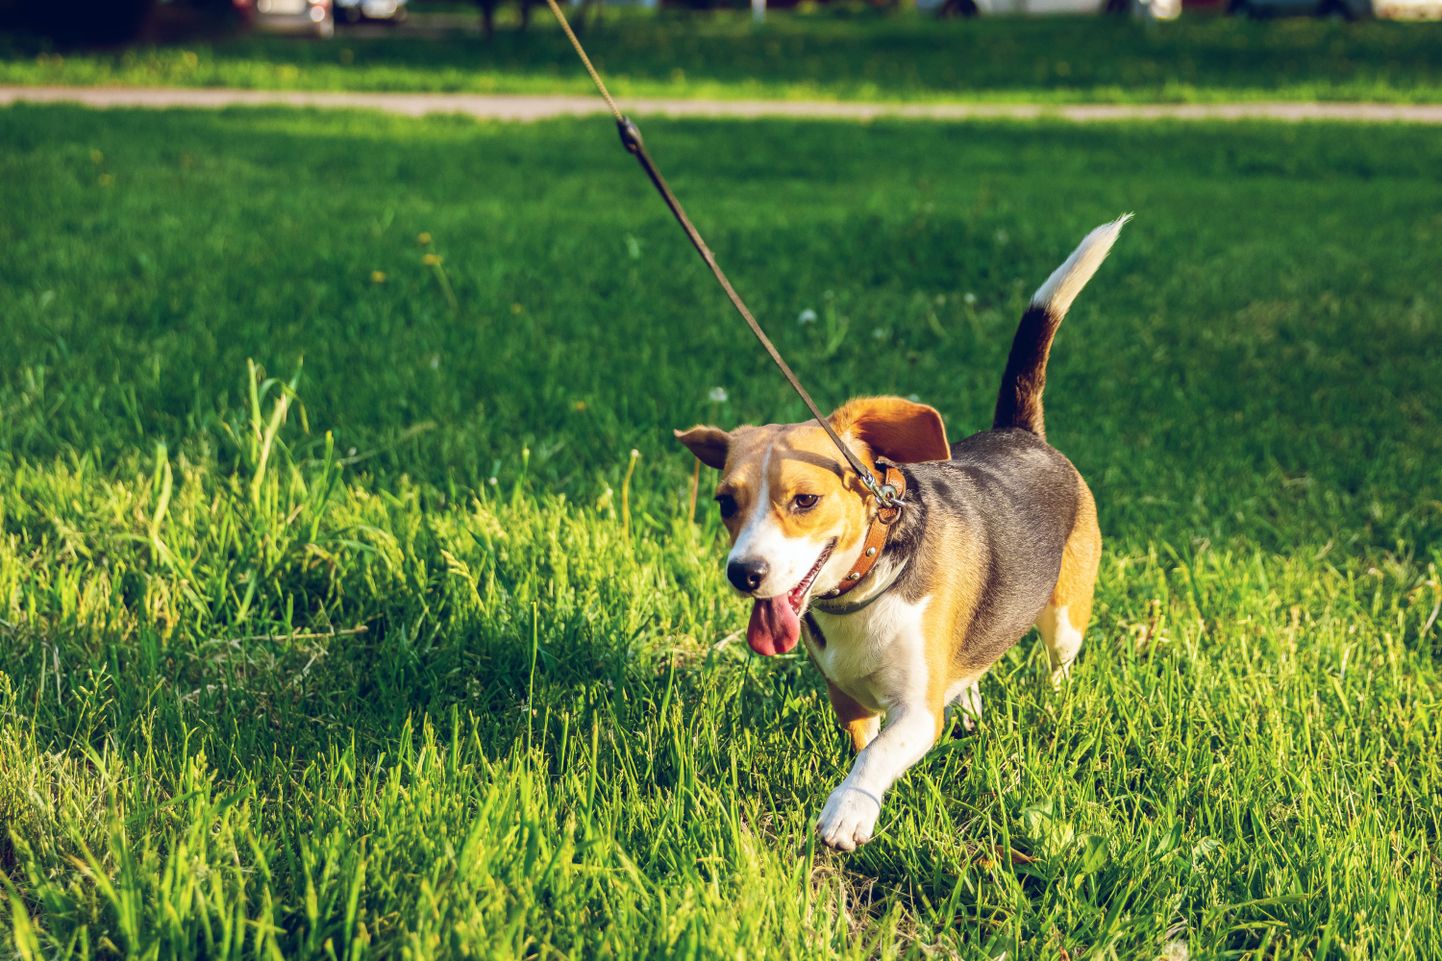 Tallinna koerte ja kasside pidamise eeskirja kohaselt peab loom olema avalikus kohas alati jalutusrihma otsas